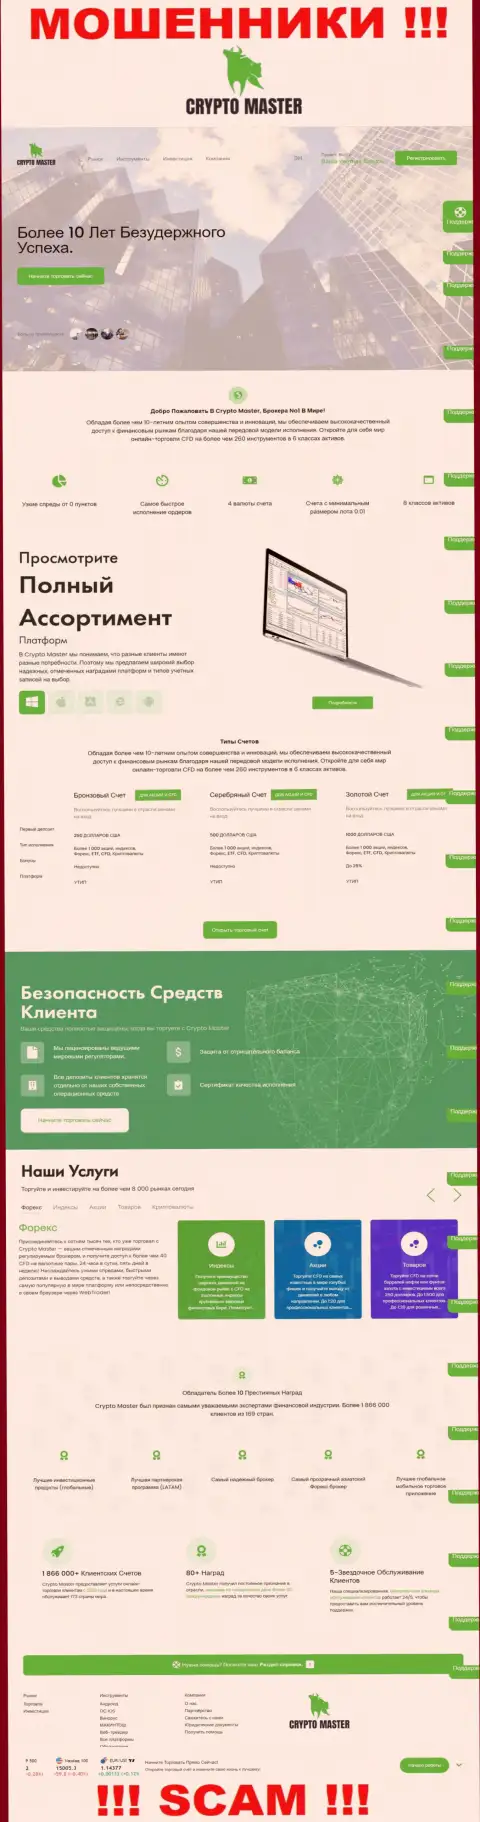 Официальная онлайн-страница лохотронного проекта Крипто Мастер Ко Ук